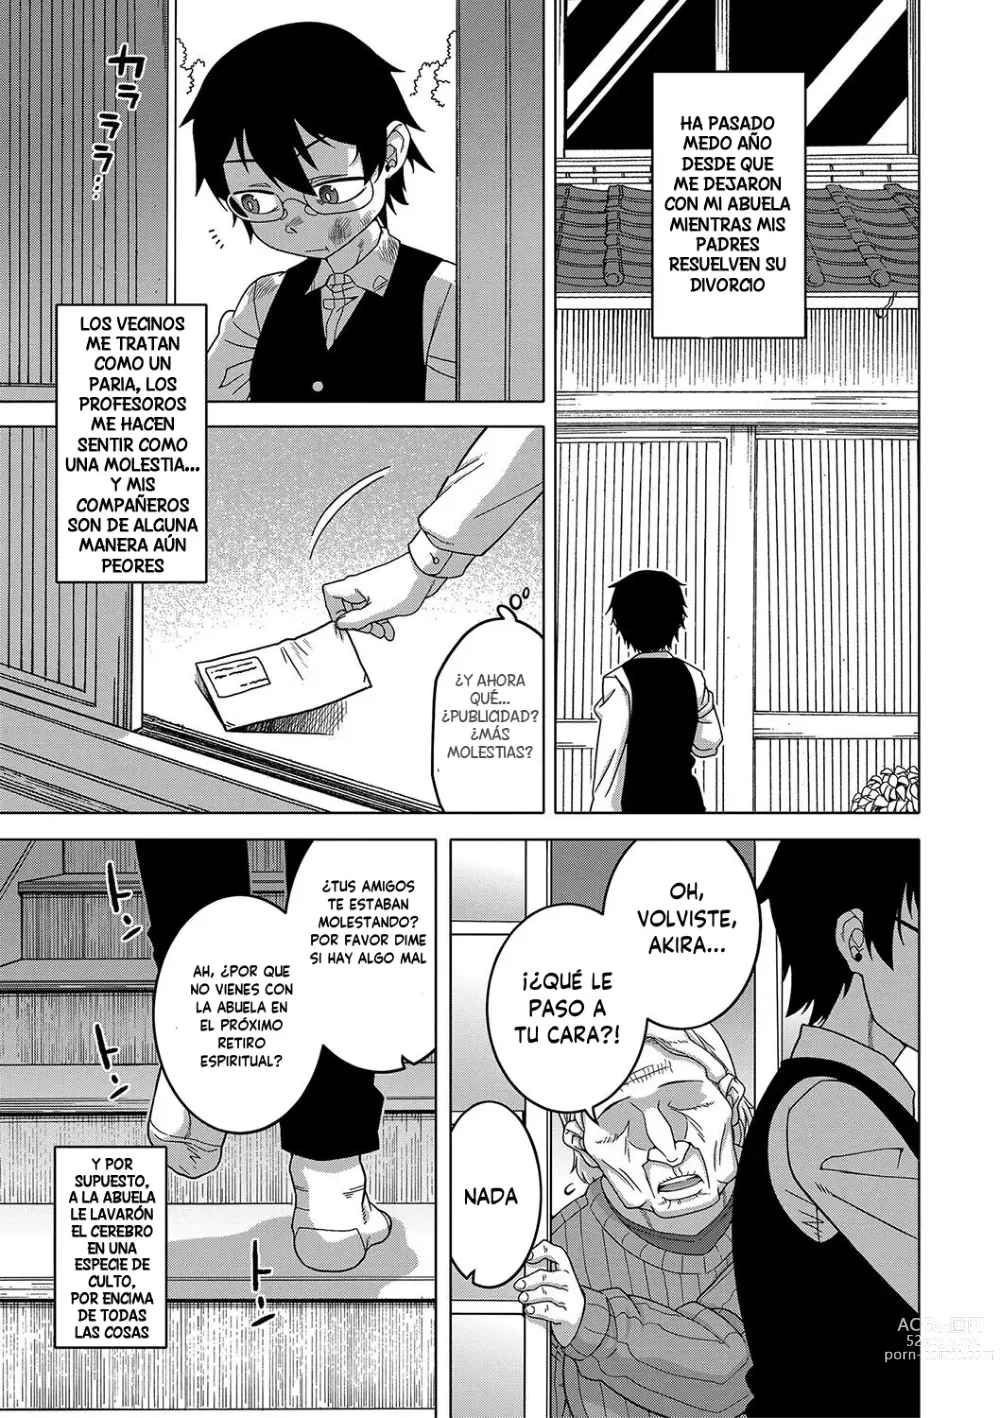 Page 8 of manga Kami-sama no Tsukurikata